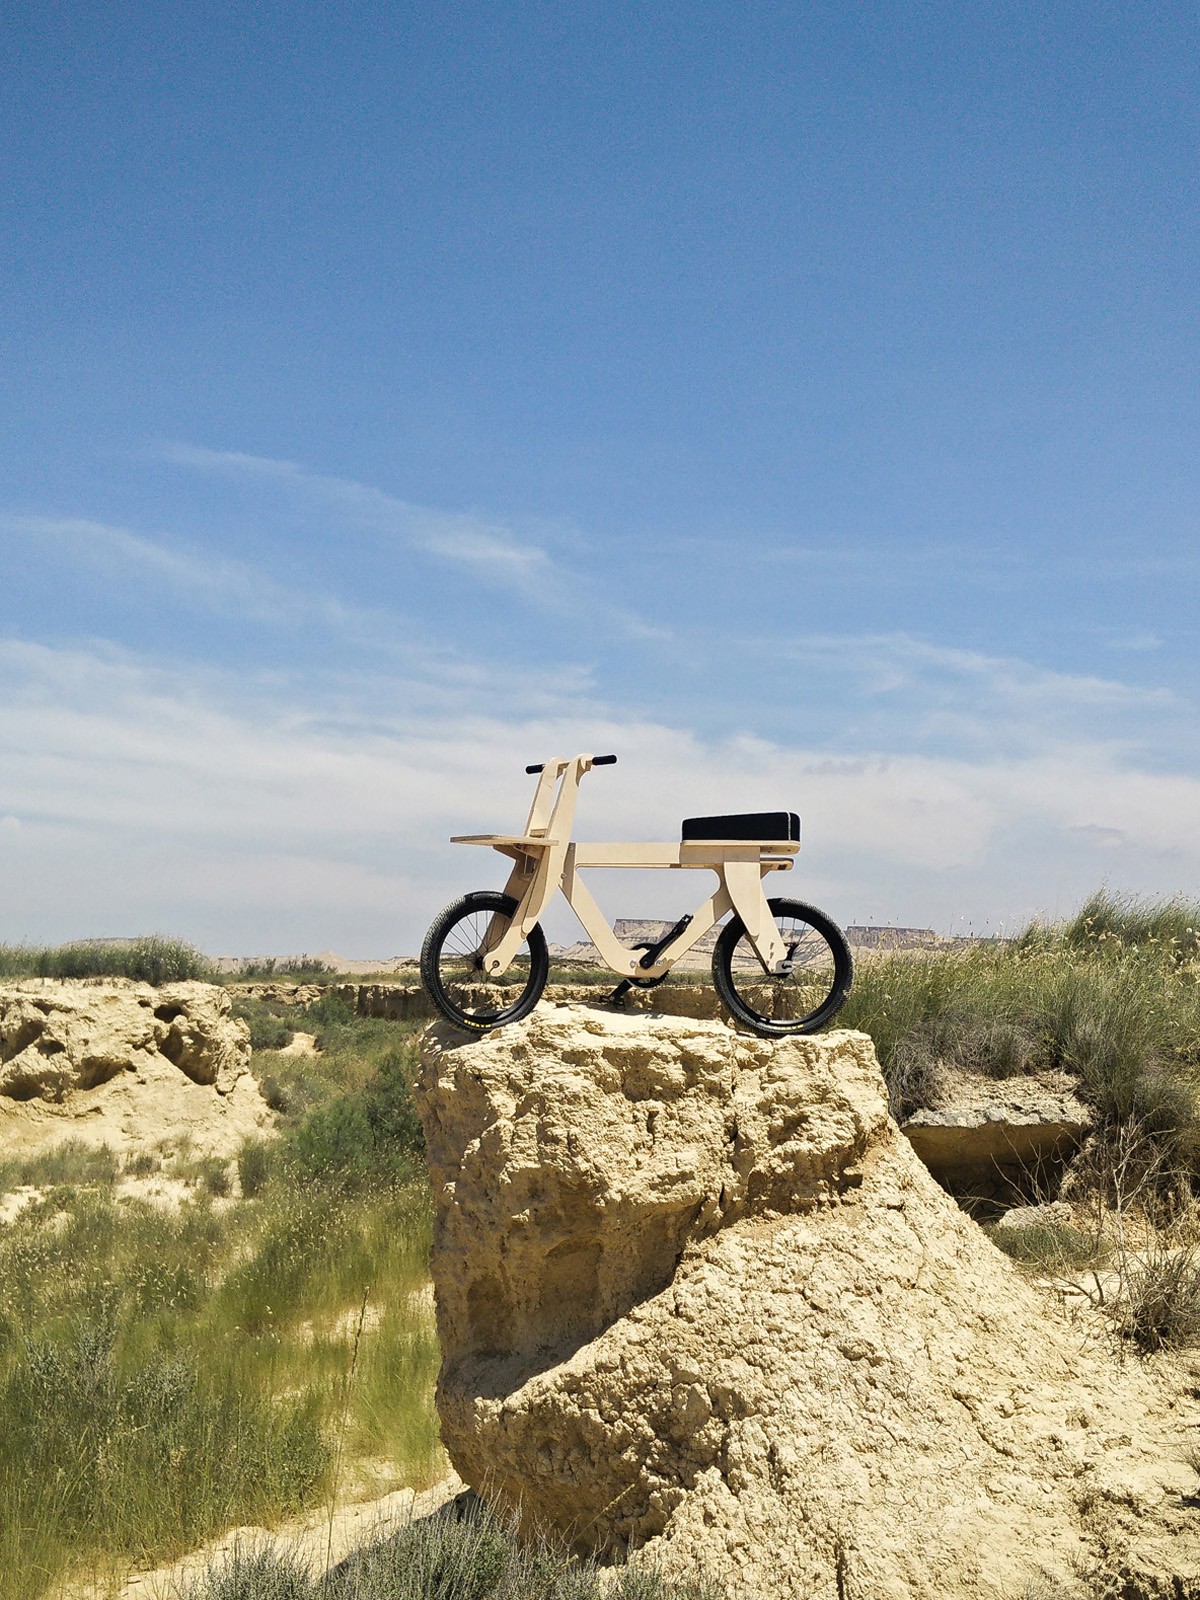 Estúdio espanhol cria bicicleta de madeira que pode ser construída por qualquer pessoa (Foto: Arquimaña)